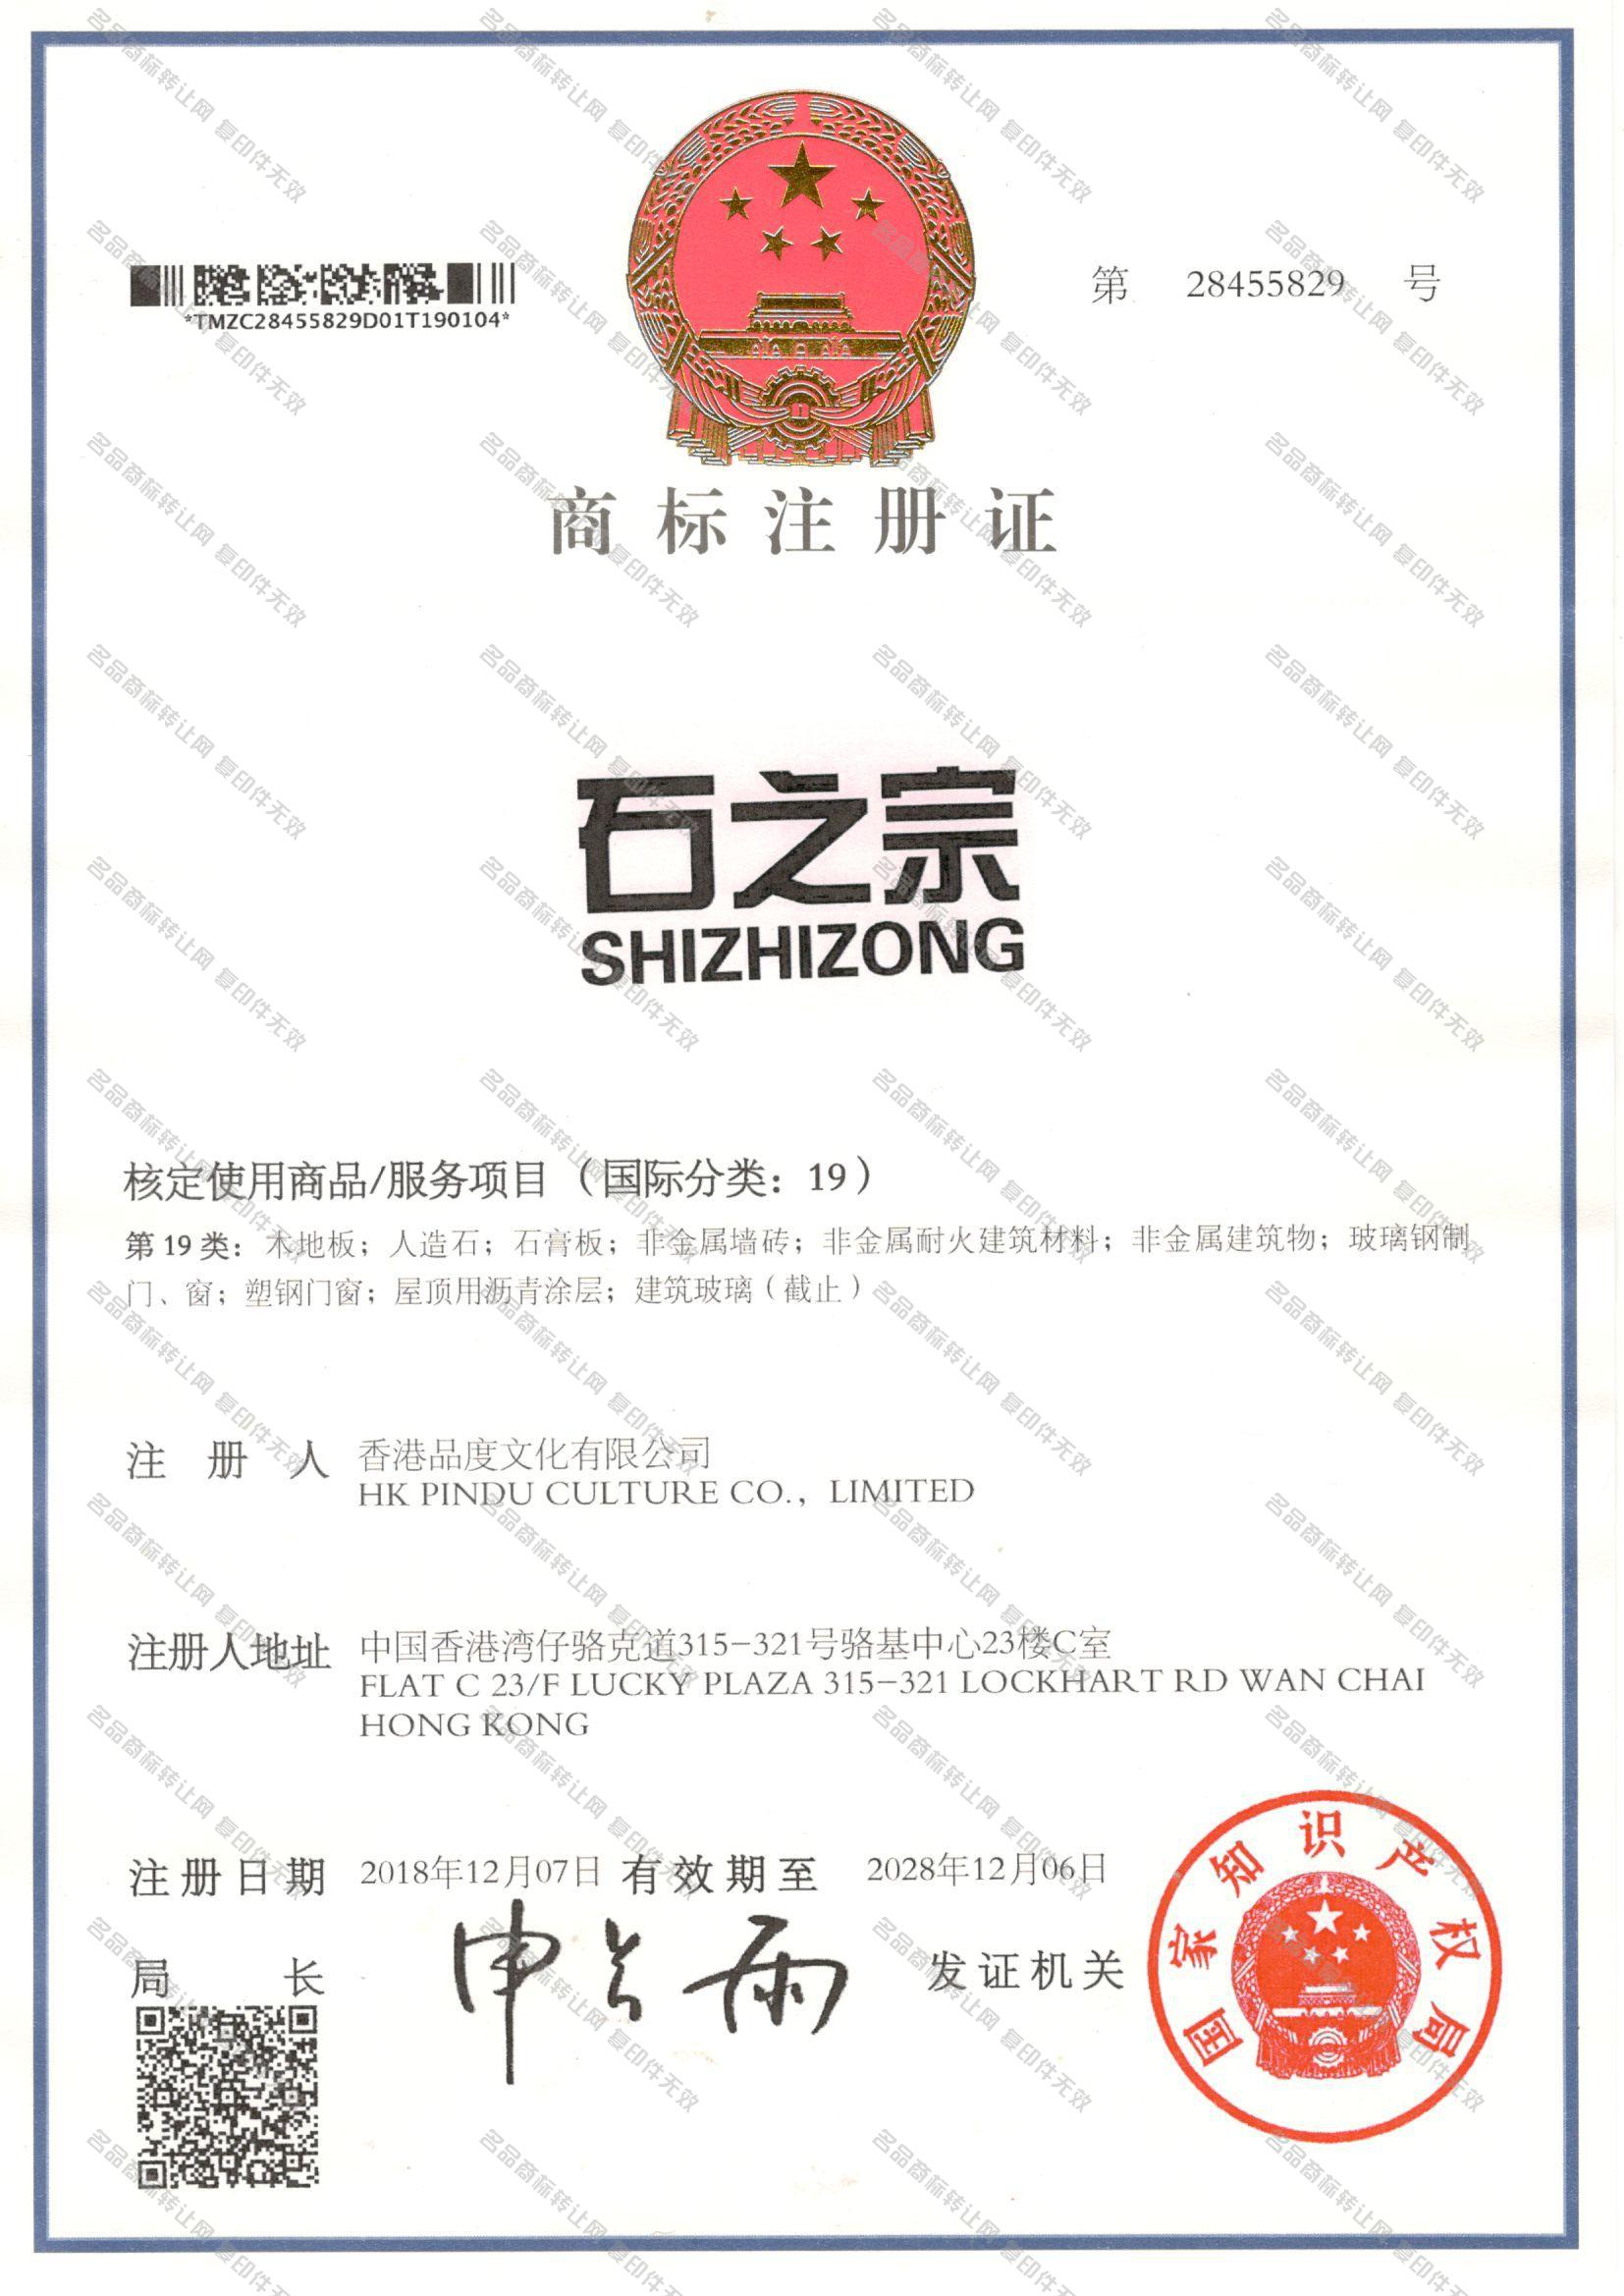 石之宗 SHIZHIZONG注册证